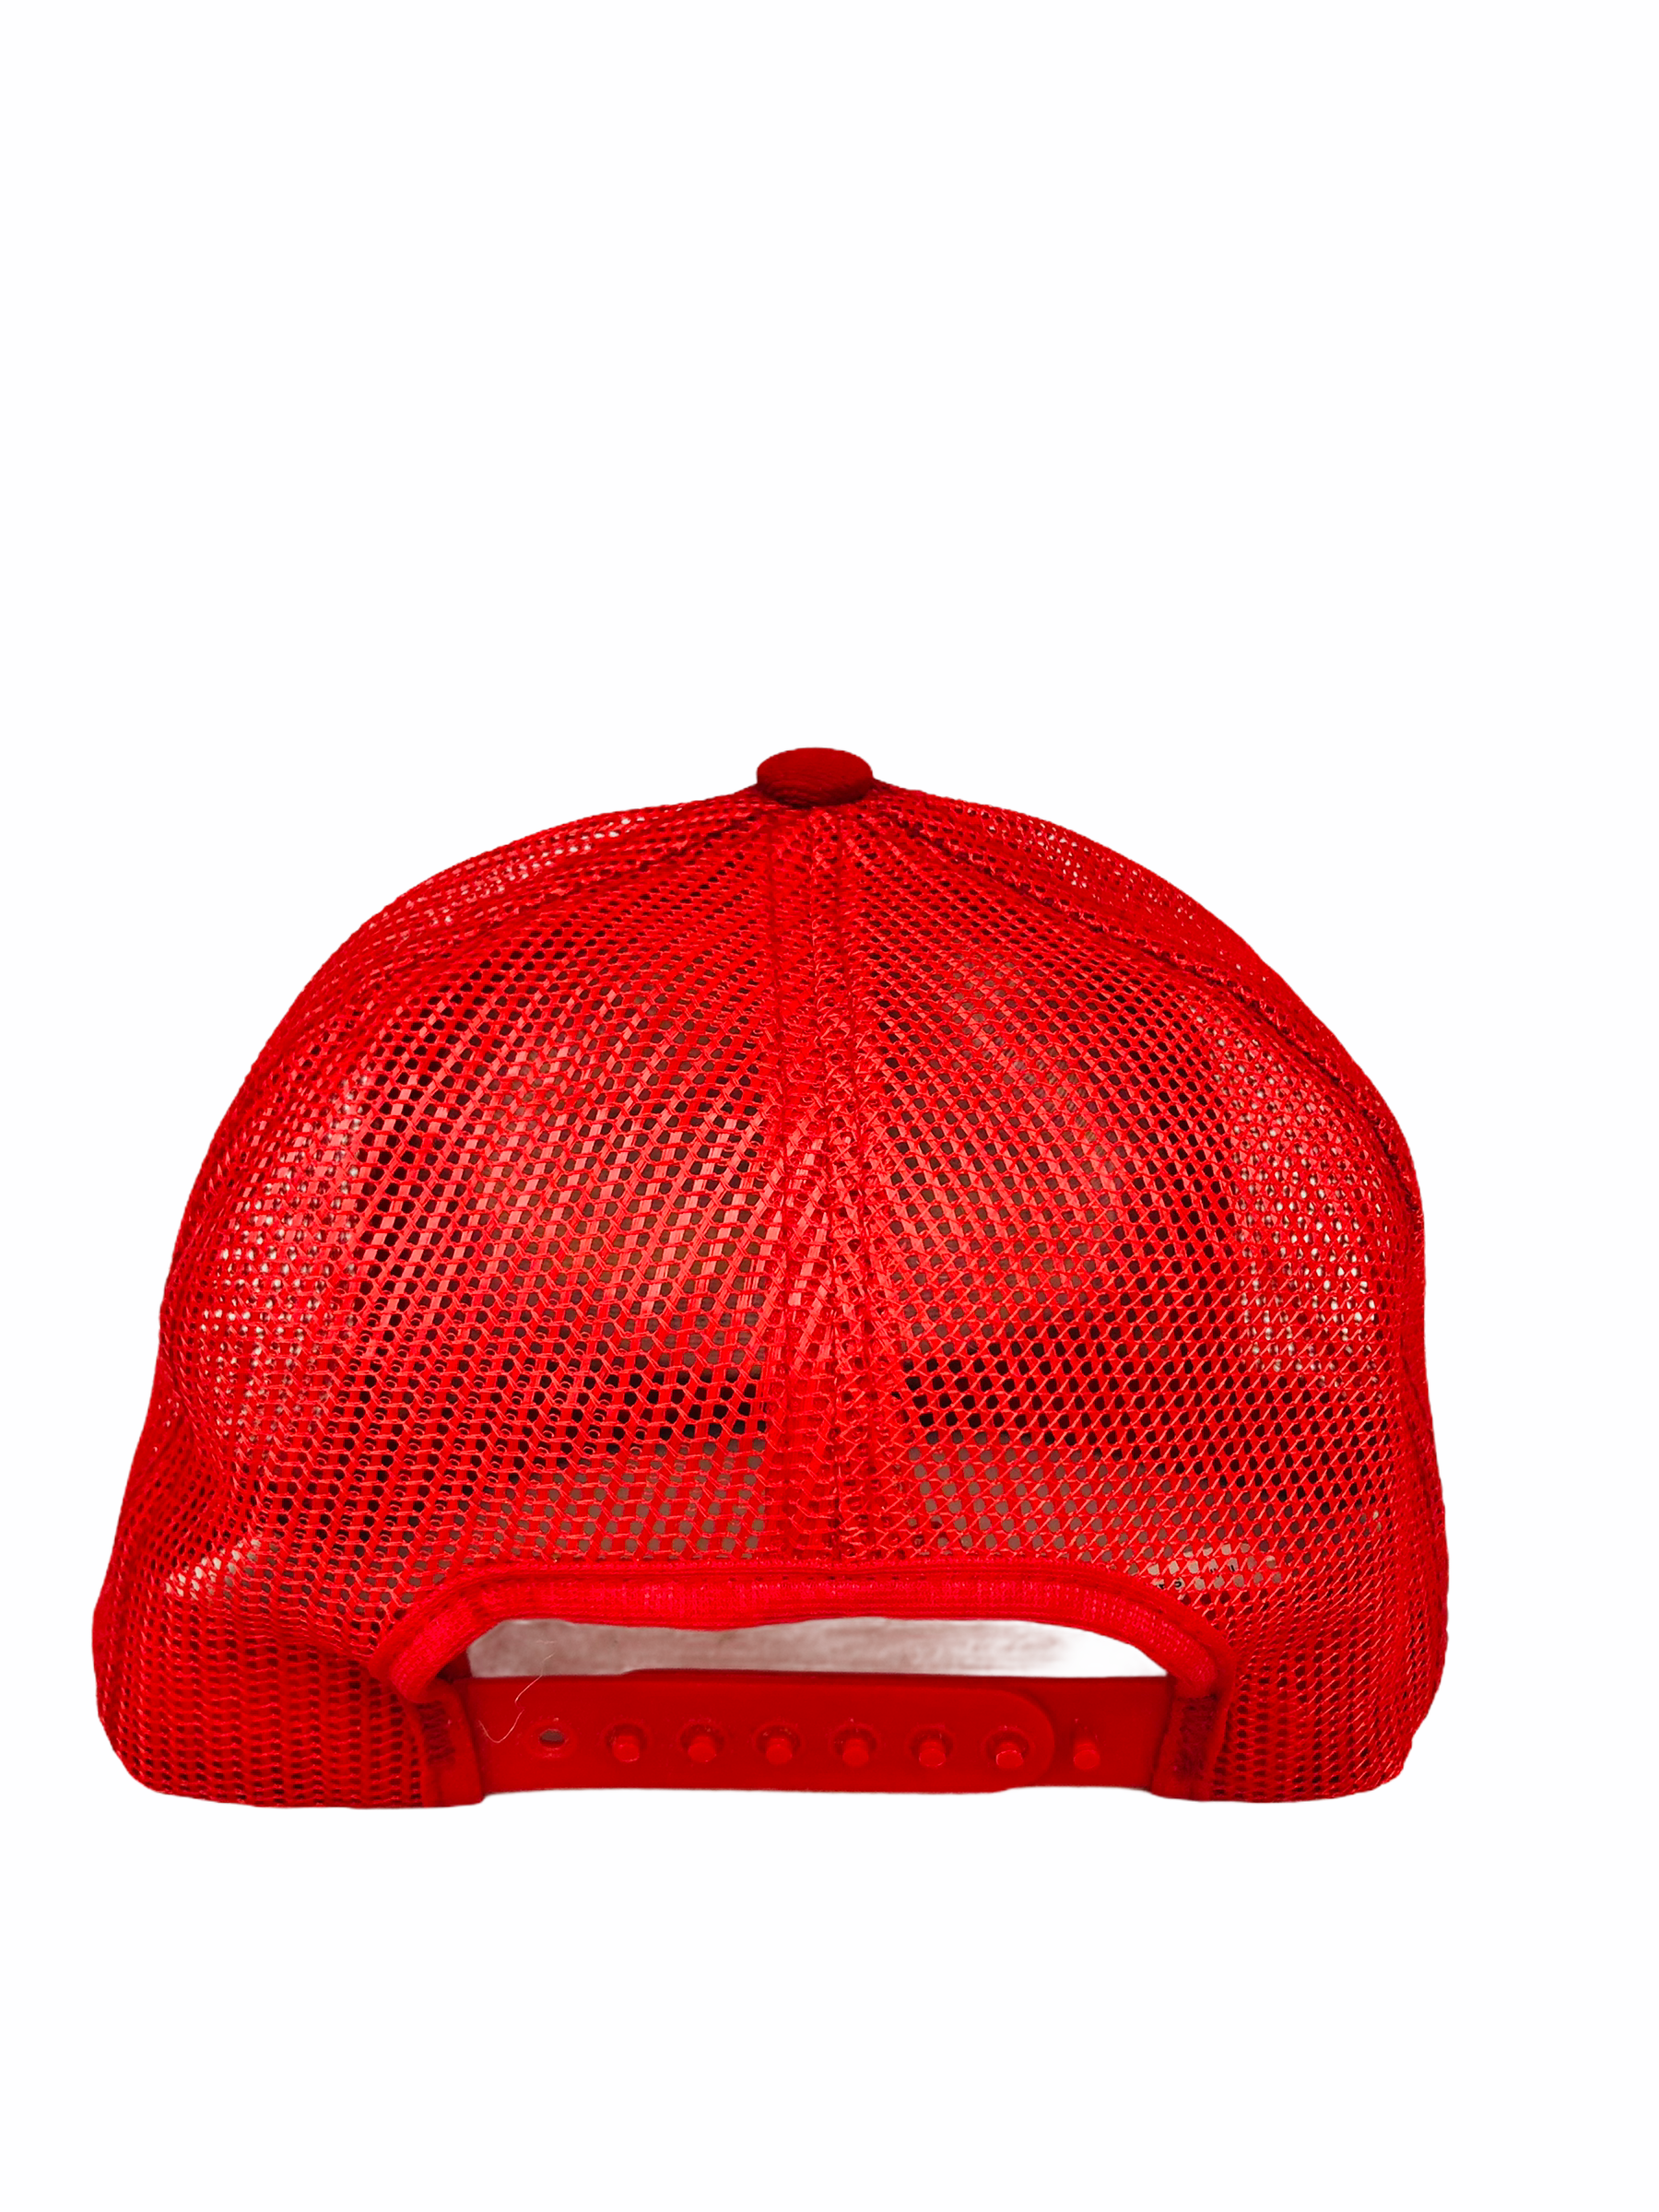 bengals mesh hat